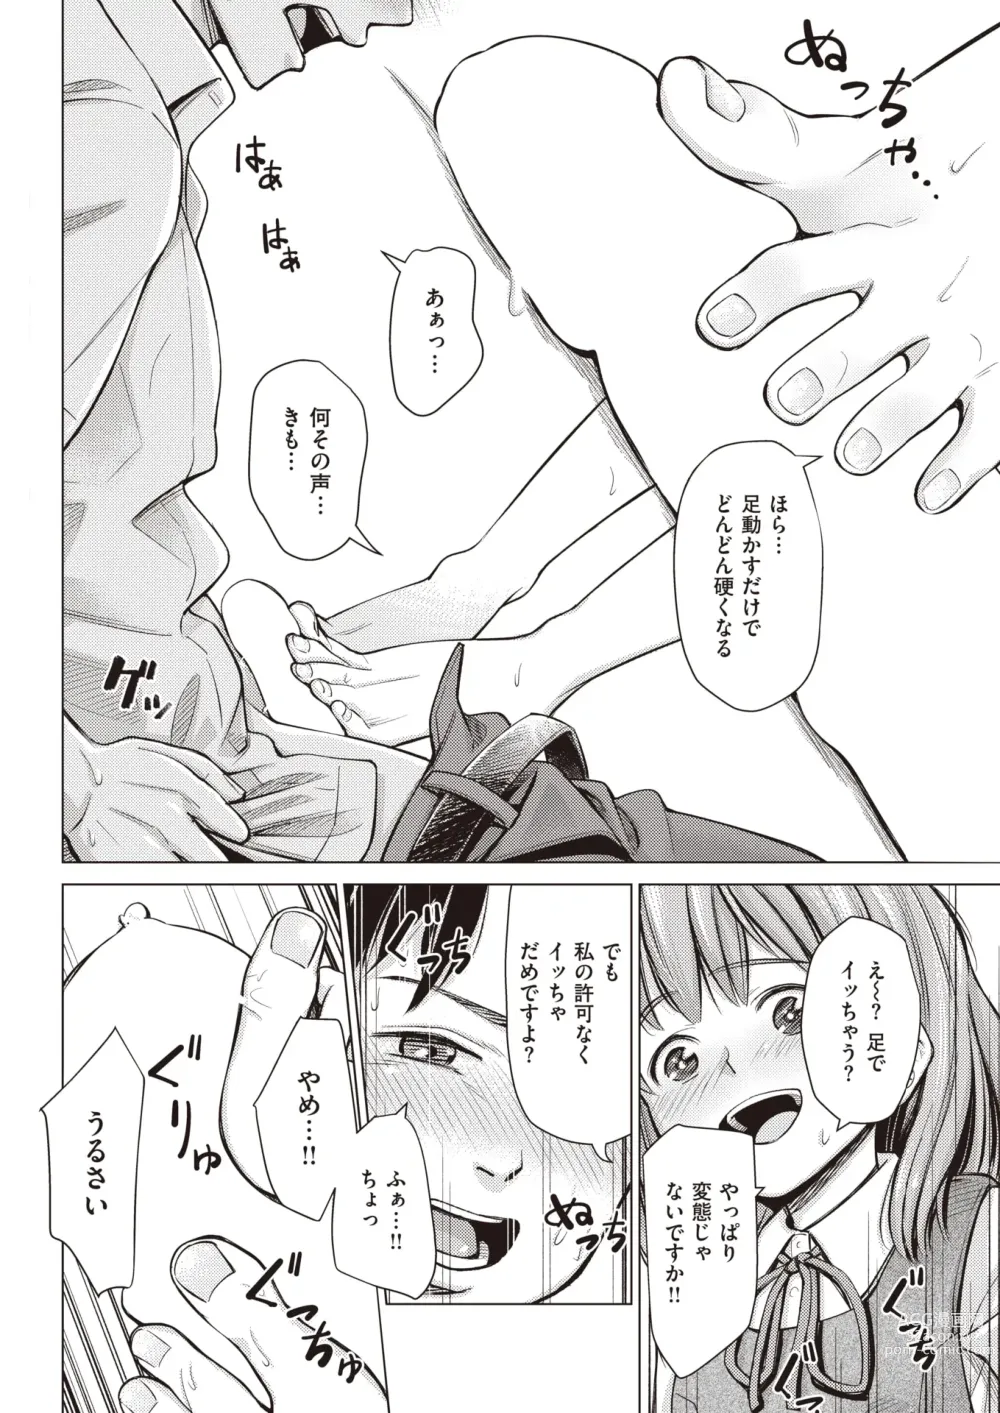 Page 6 of manga Honne. Mukidashi no Shigyakushin de...